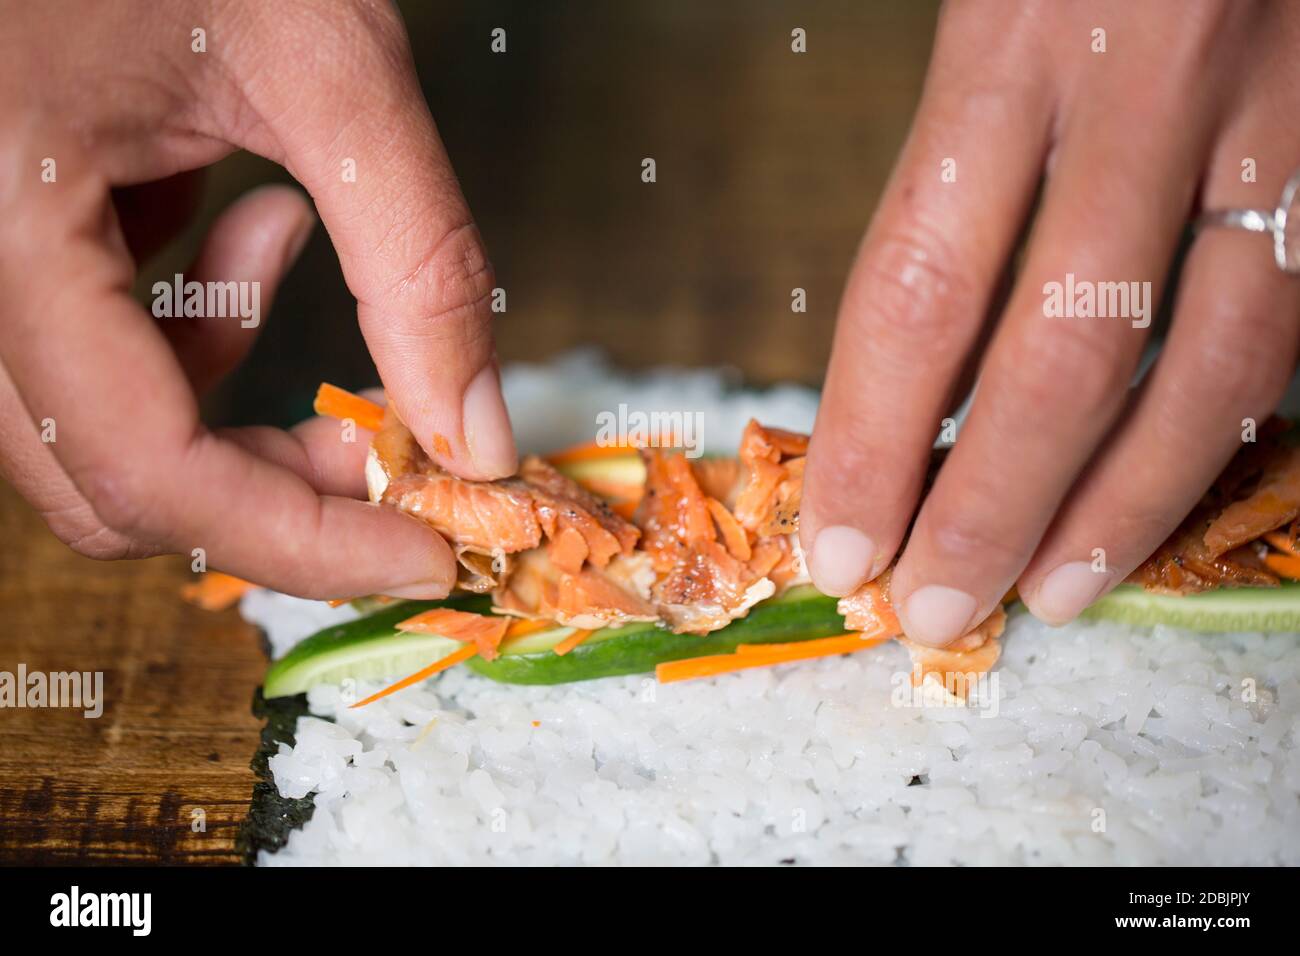 Kimi Werner prepares salmon sushi. Stock Photo